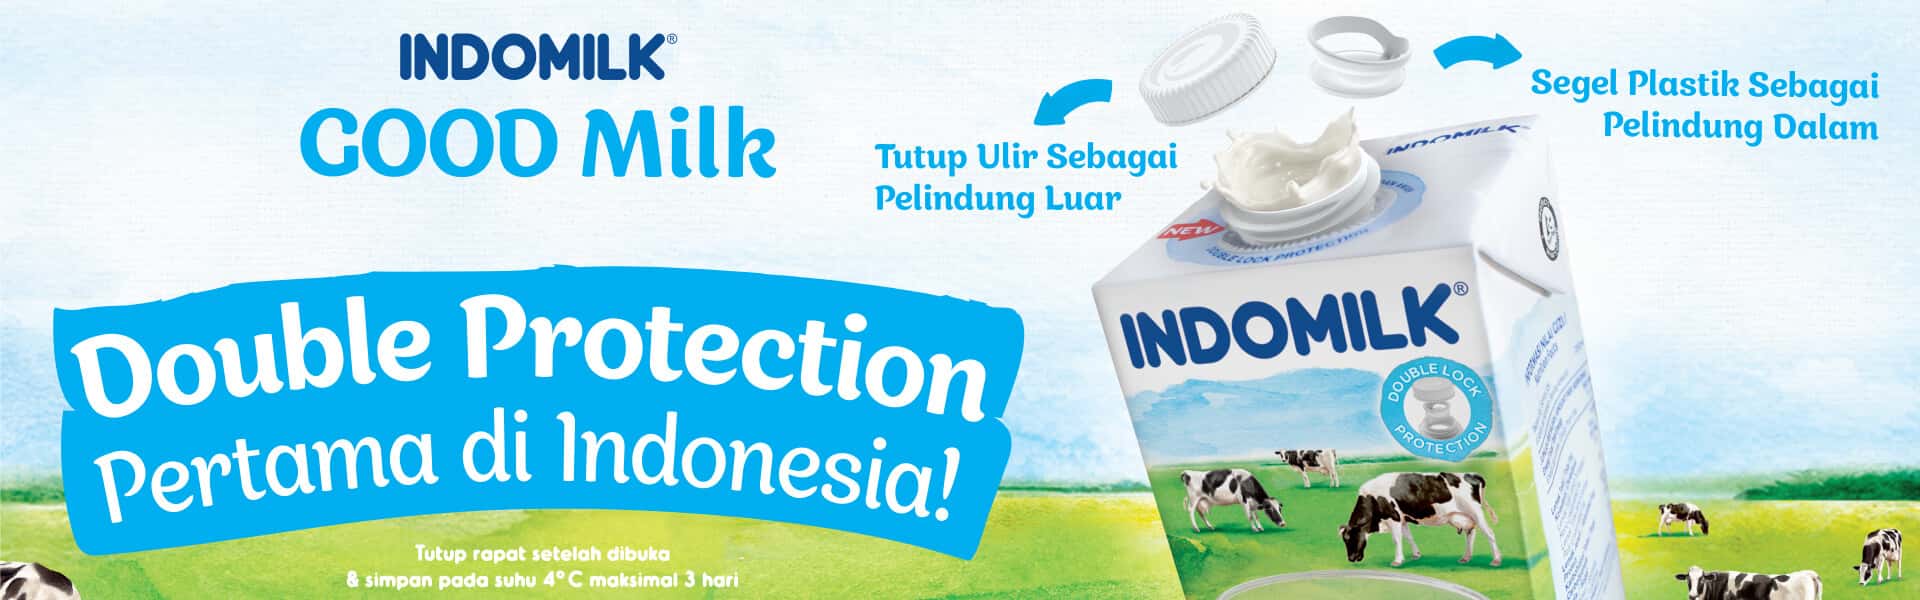 indomillk good milk